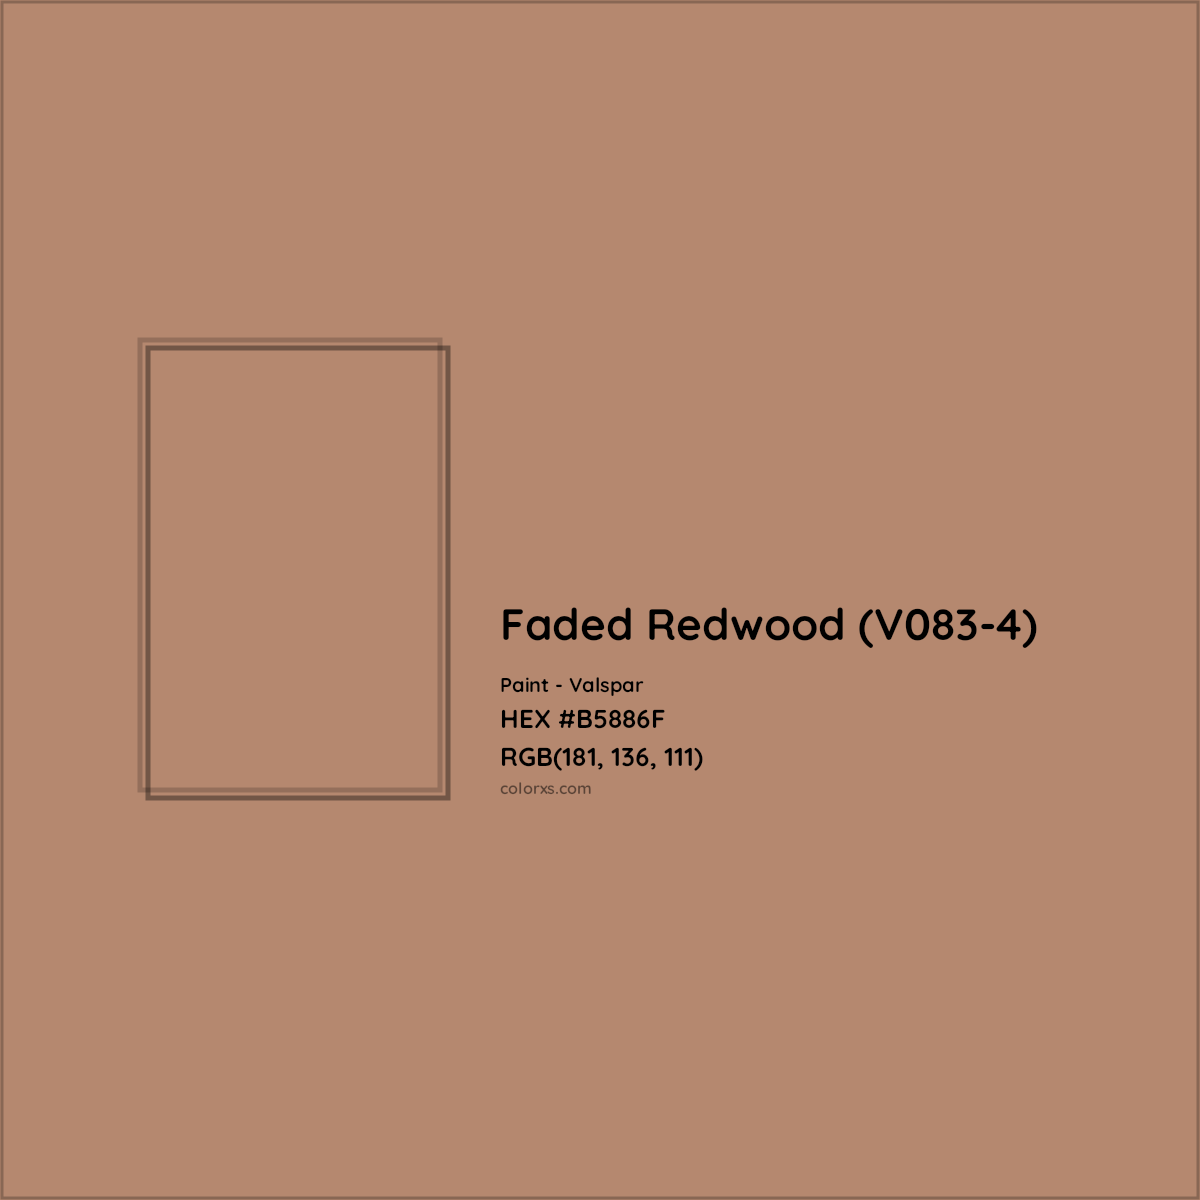 HEX #B5886F Faded Redwood (V083-4) Paint Valspar - Color Code